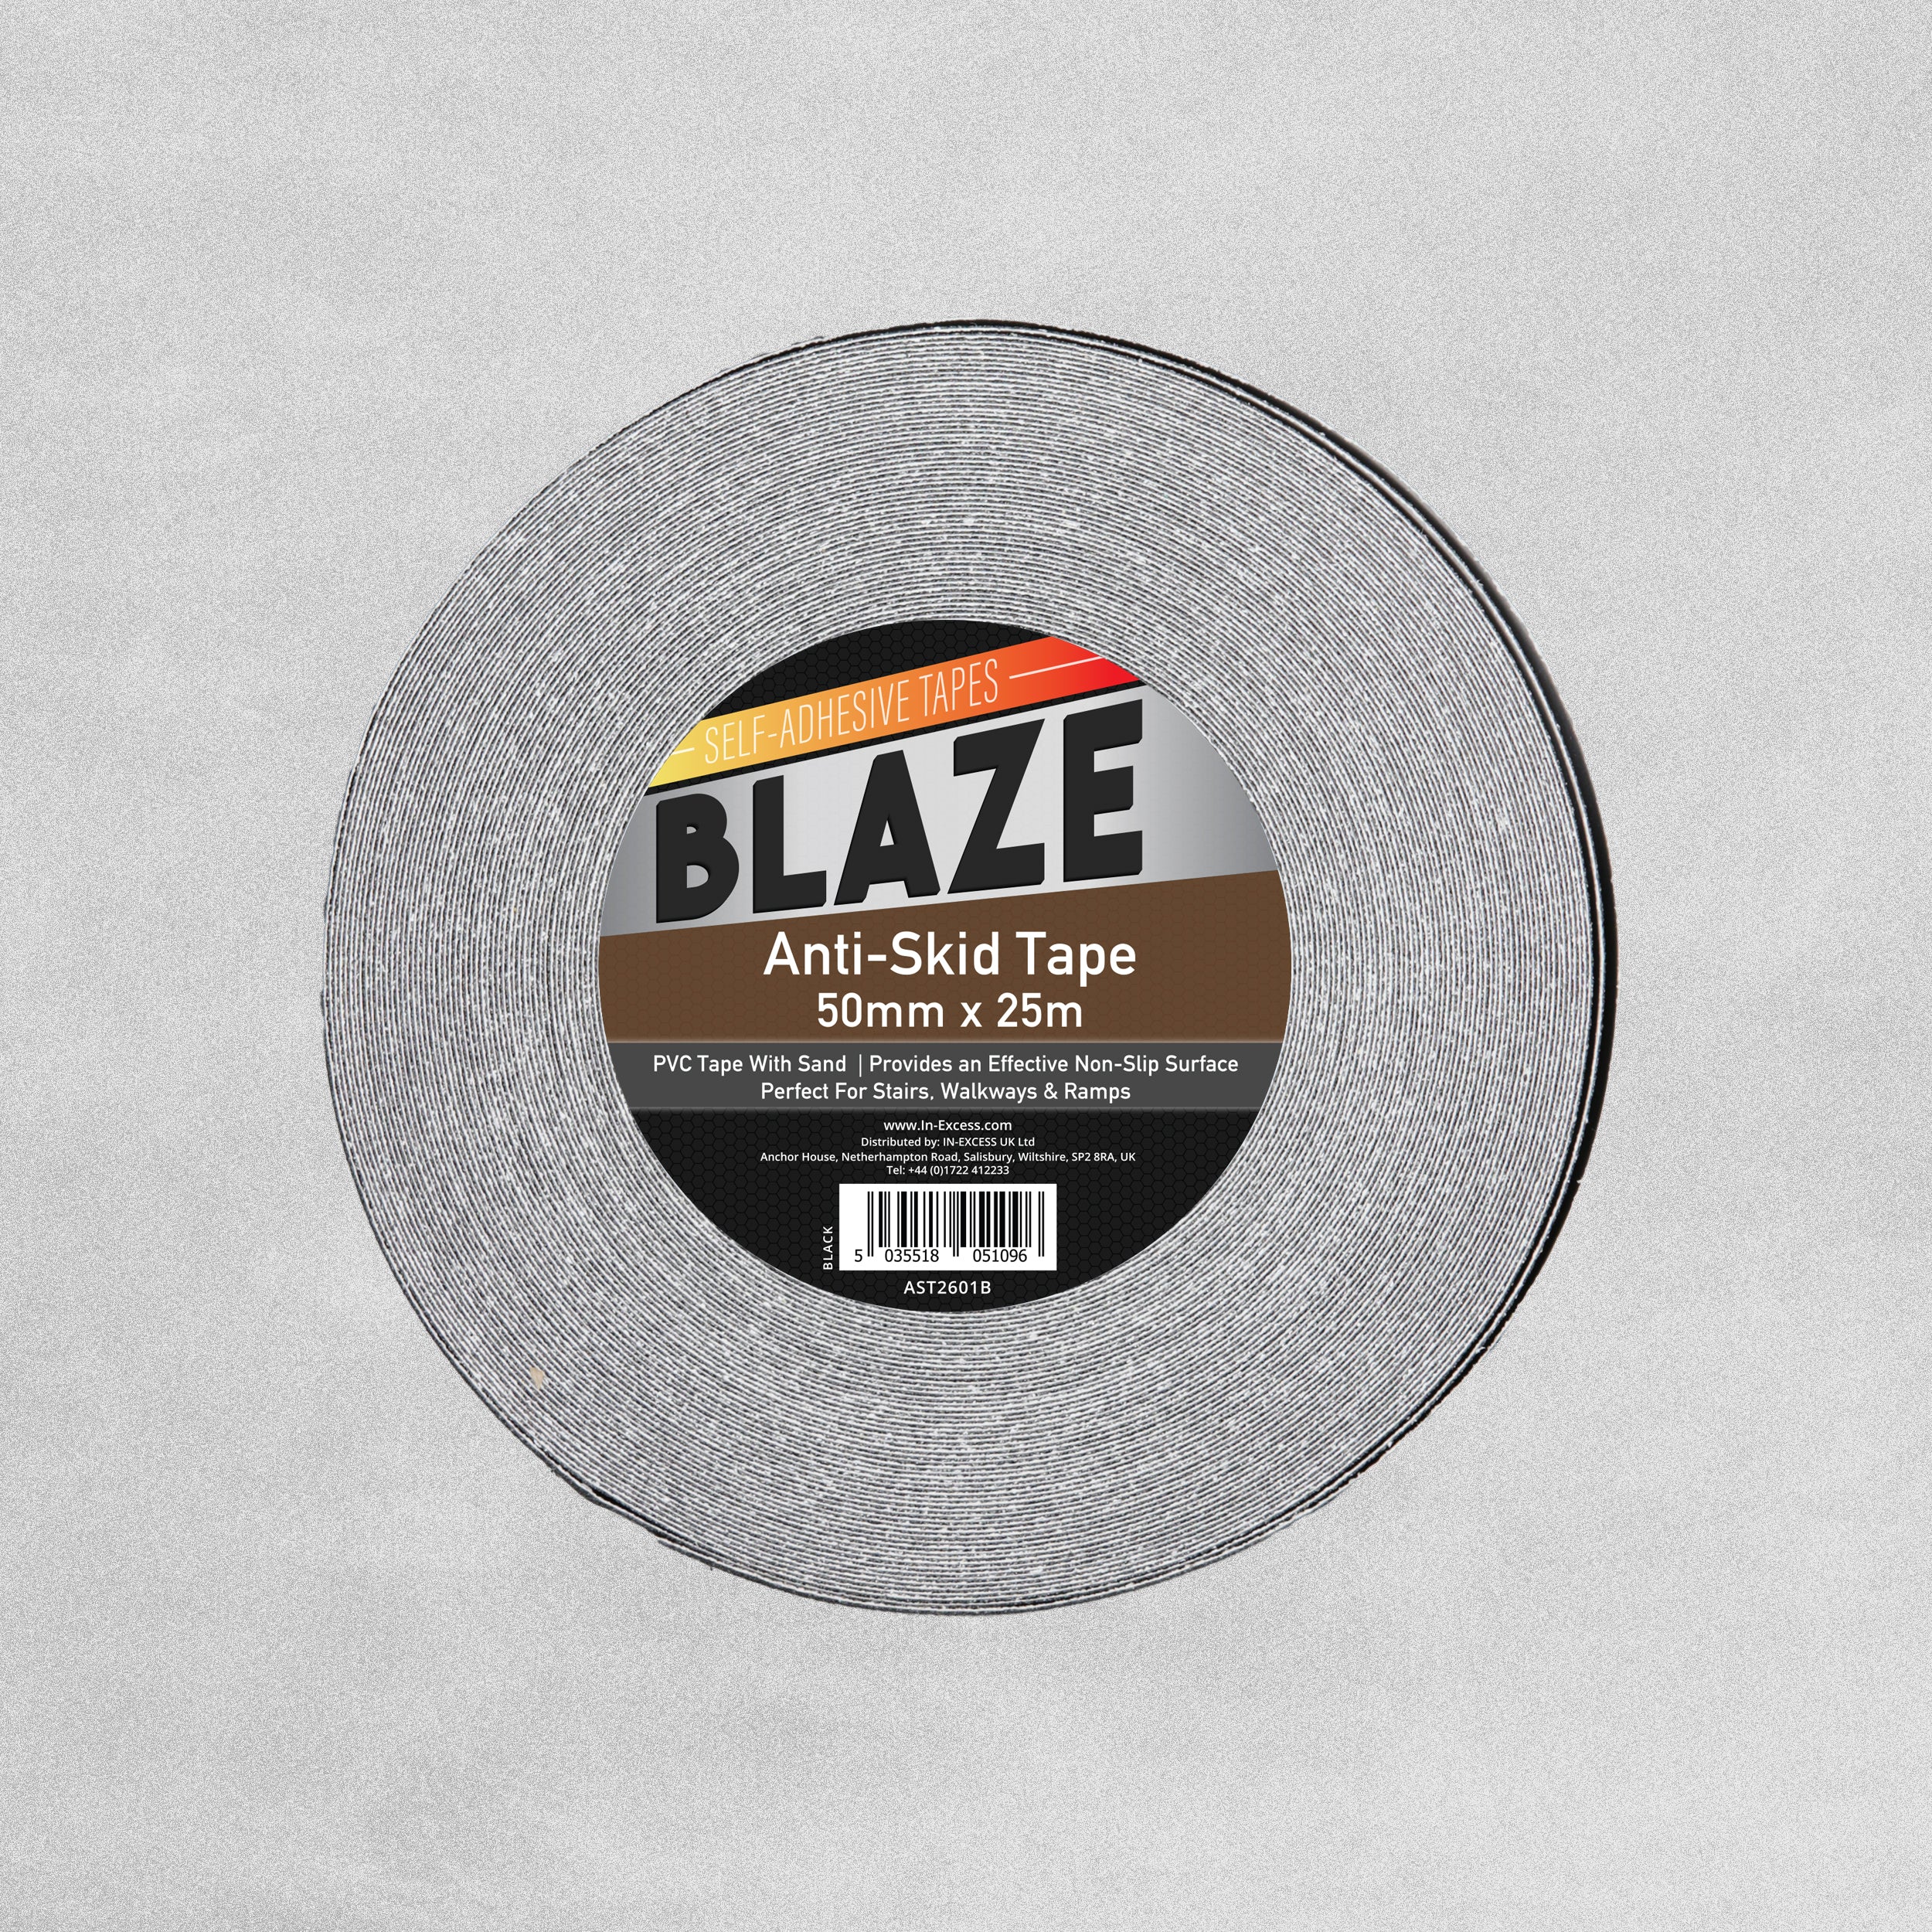 Blaze Anti-Skid Tape 50mm x 25m - Black